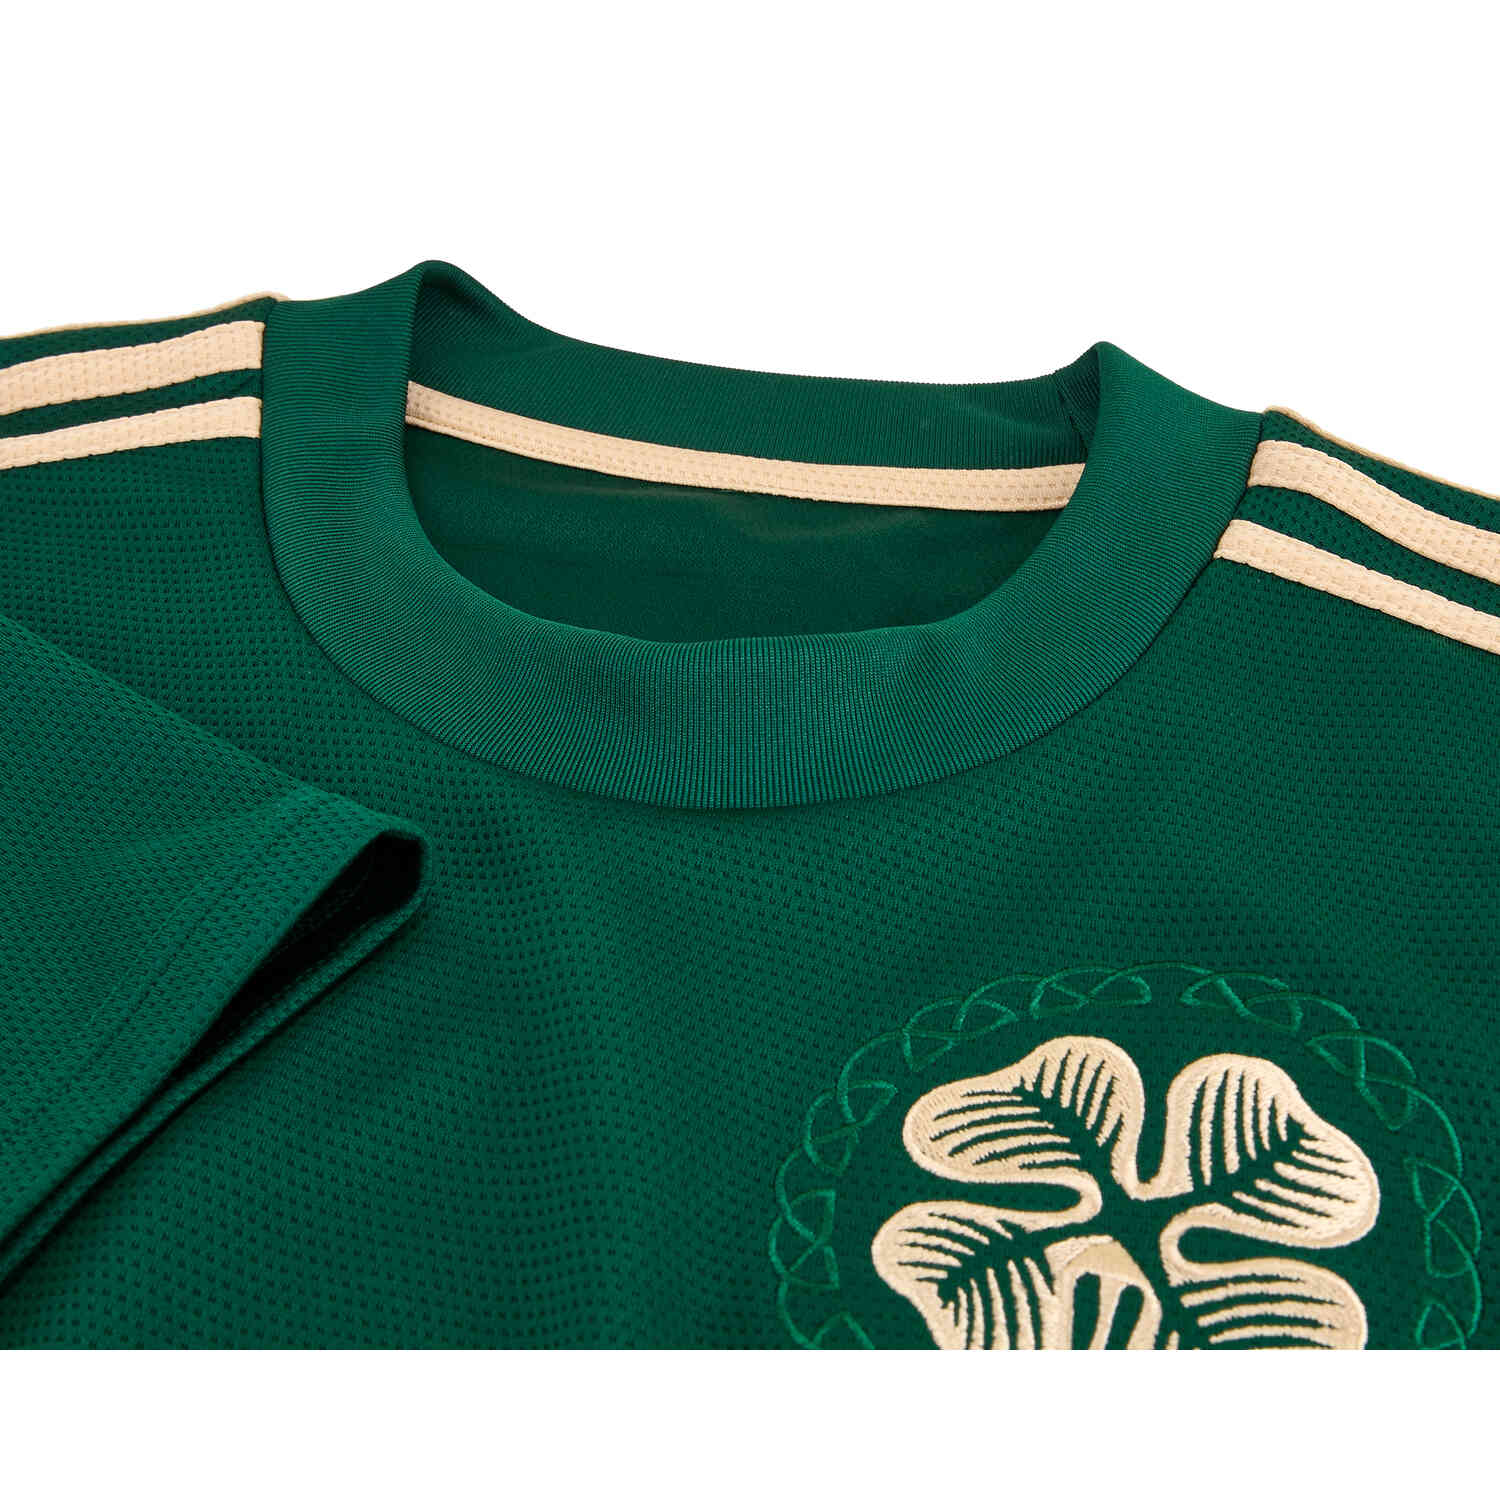 Celtic 2021-22 Away Kit